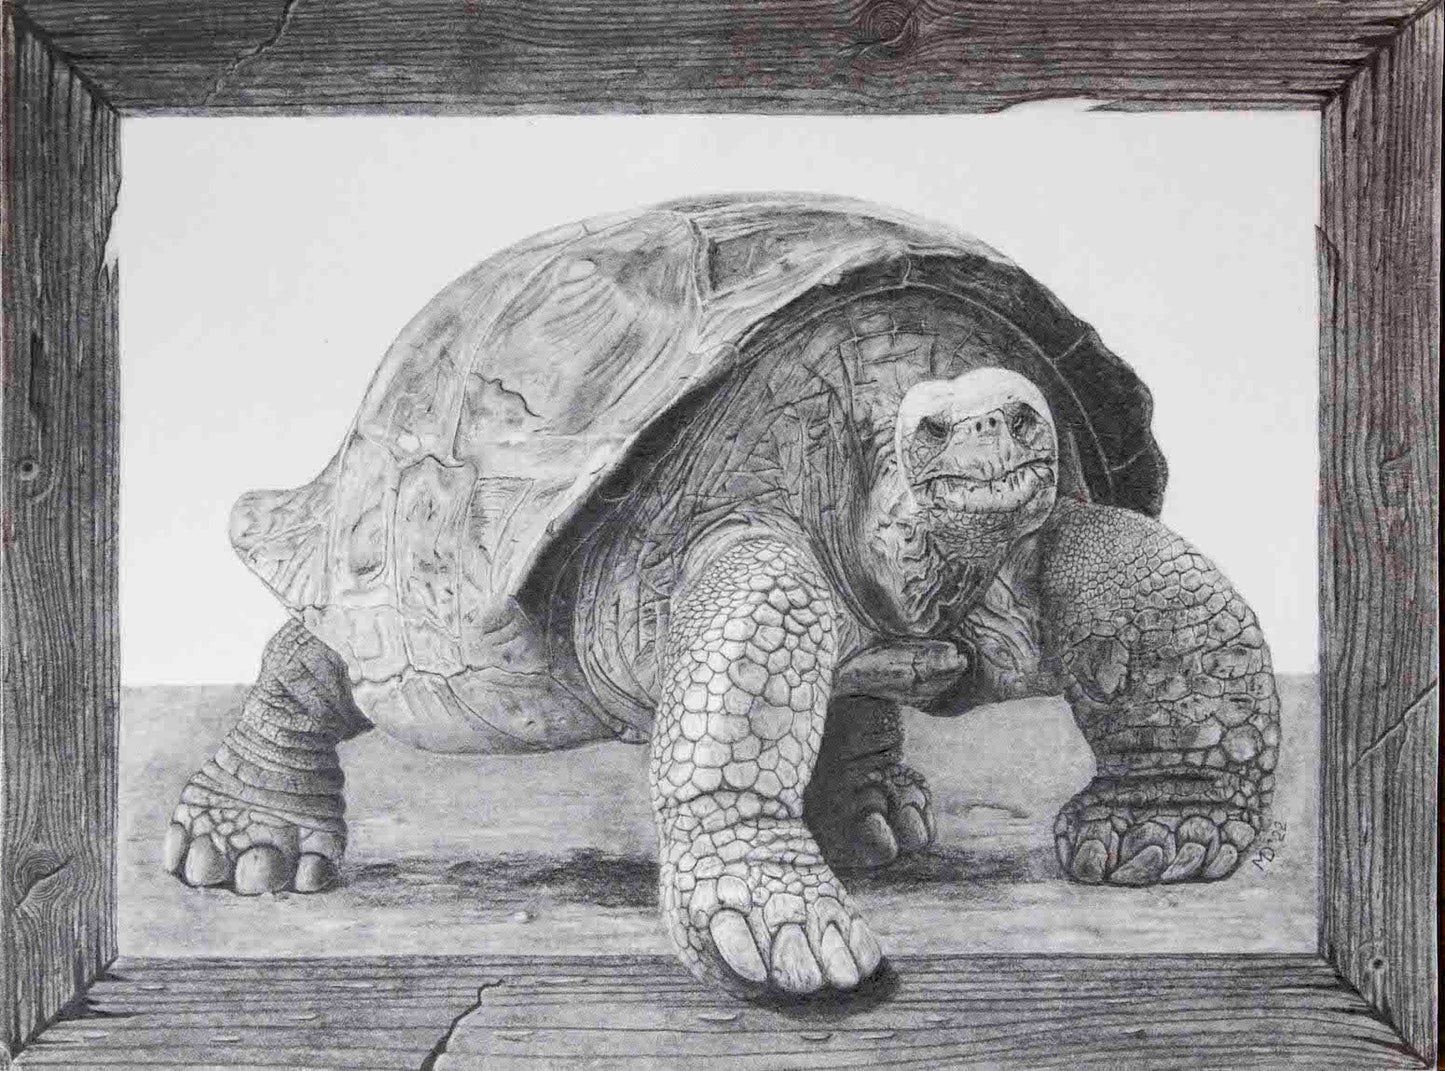 "Old tortoise, Old wood" prison art original art Michael Dorcas 